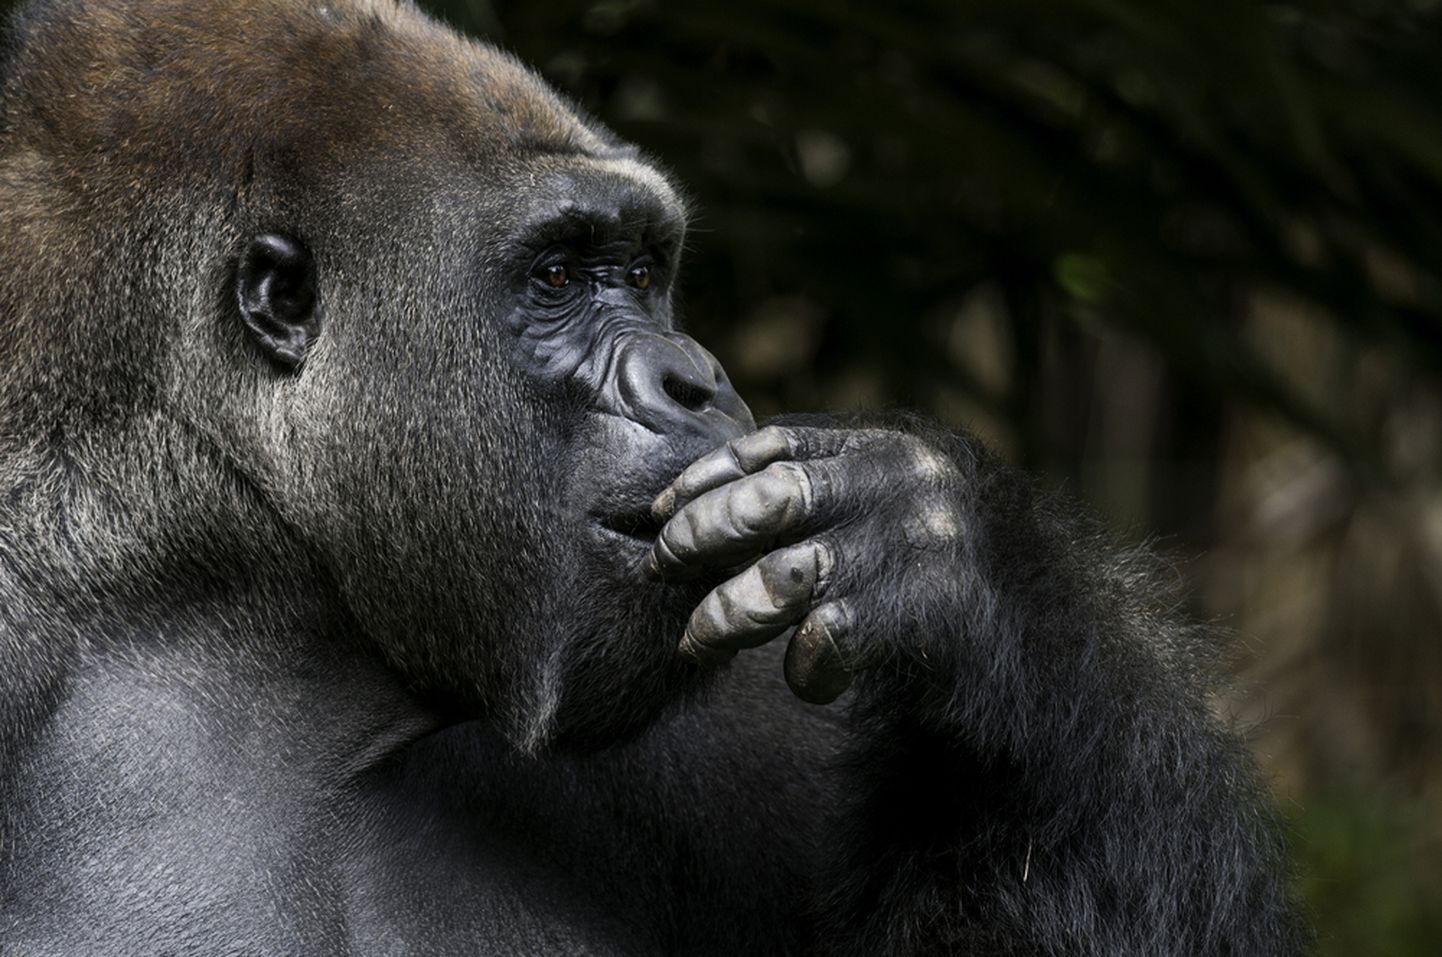 "Tehisintellekti valdkonnas kummitab nn gorillaprobleem."